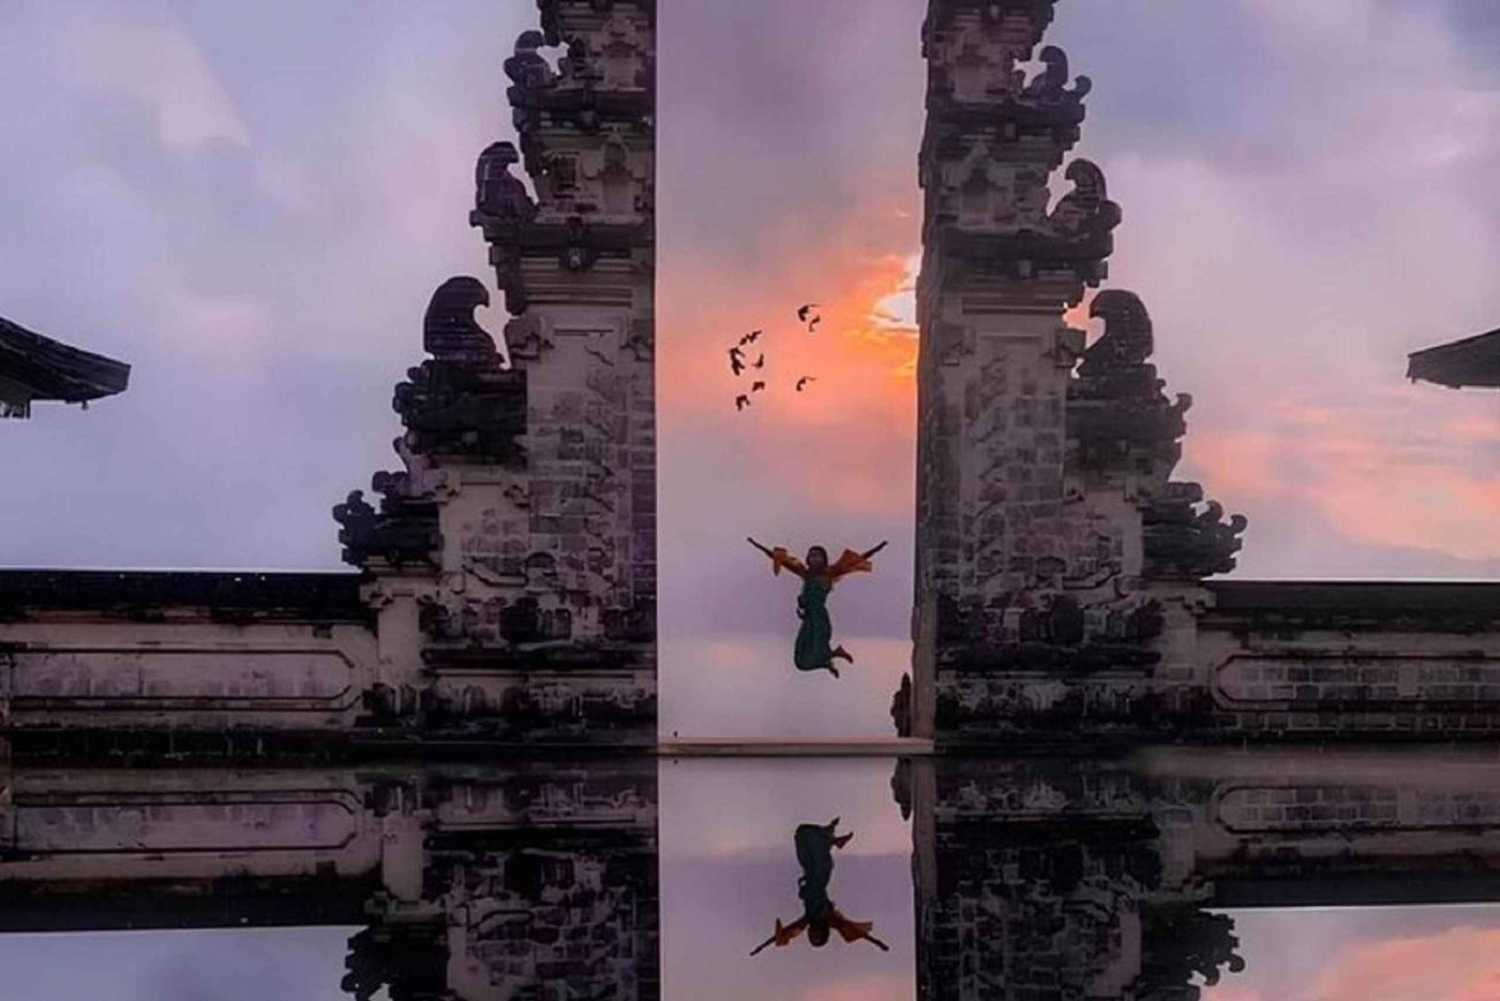 Bali Oriental: Visita a las Puertas de Lempuyang, el Palacio del Agua y la Cascada